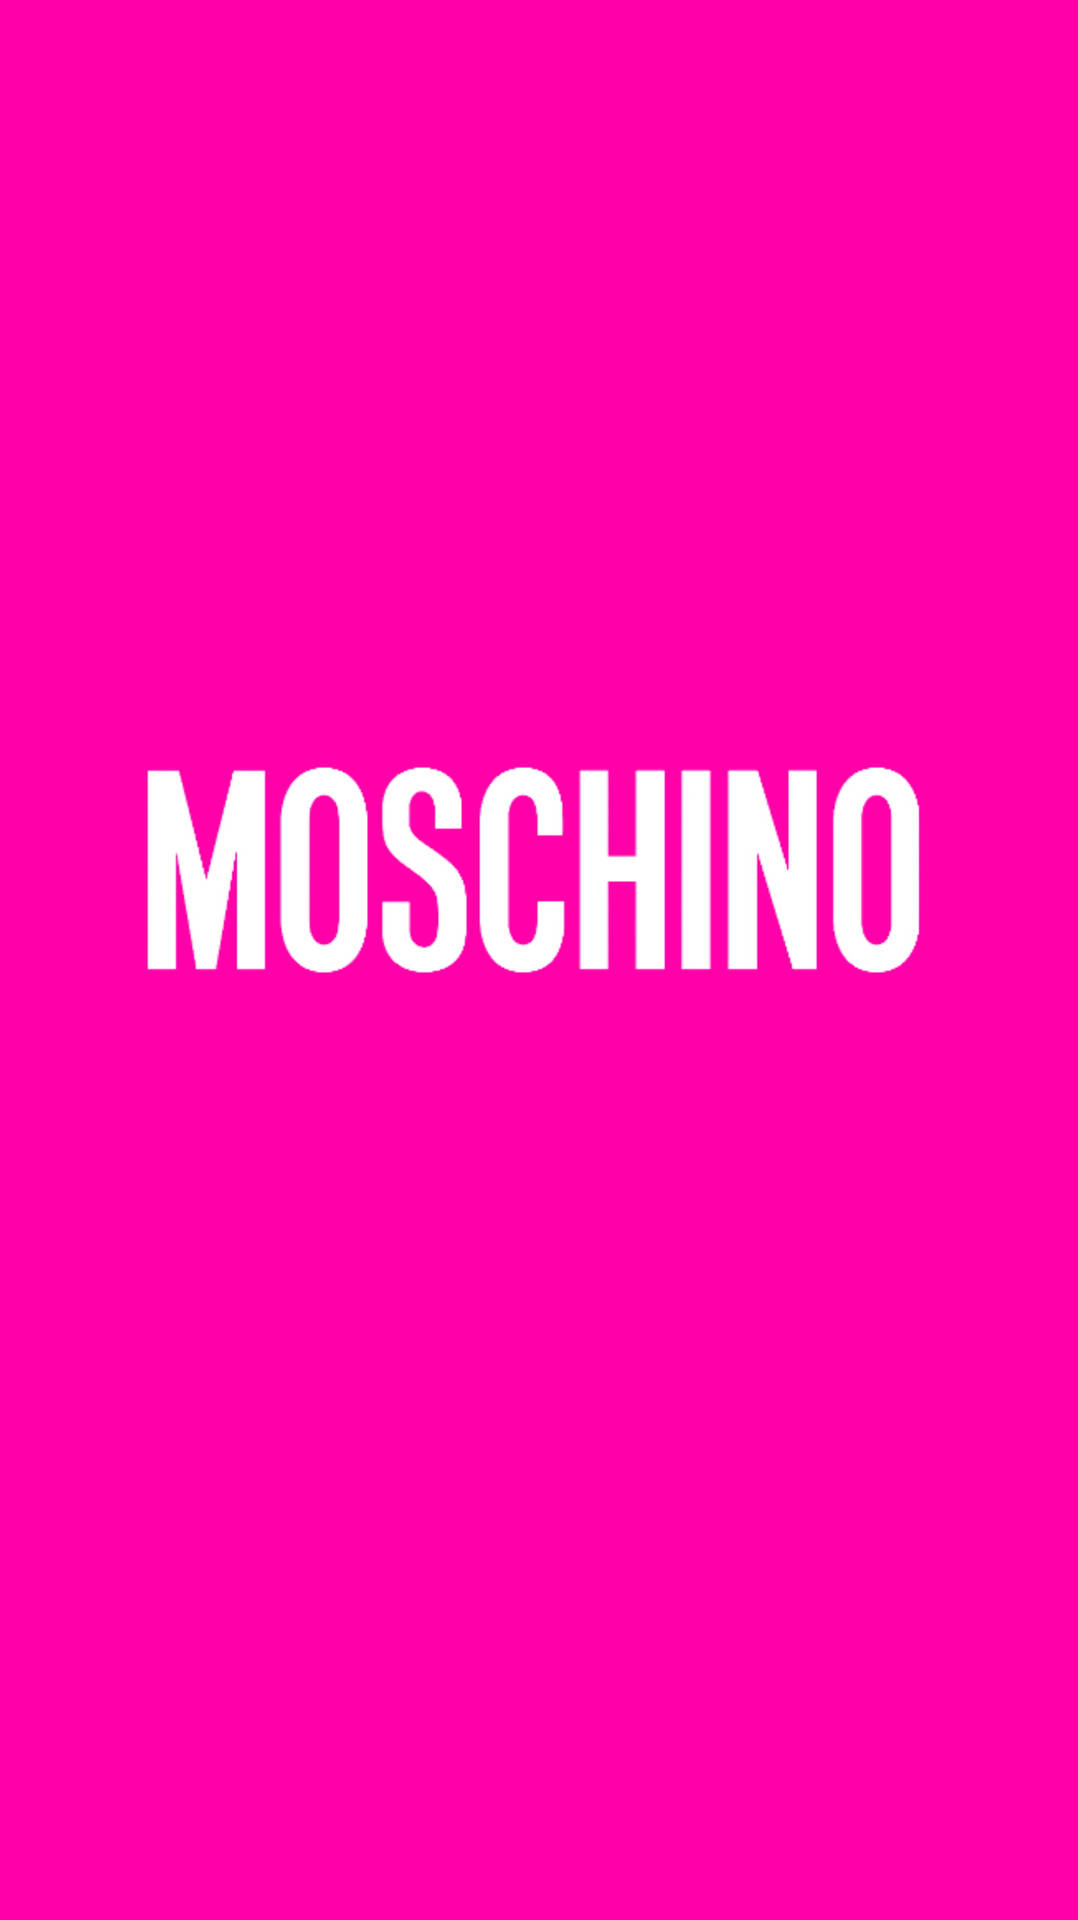 Weißund Pink Moschino Wallpaper